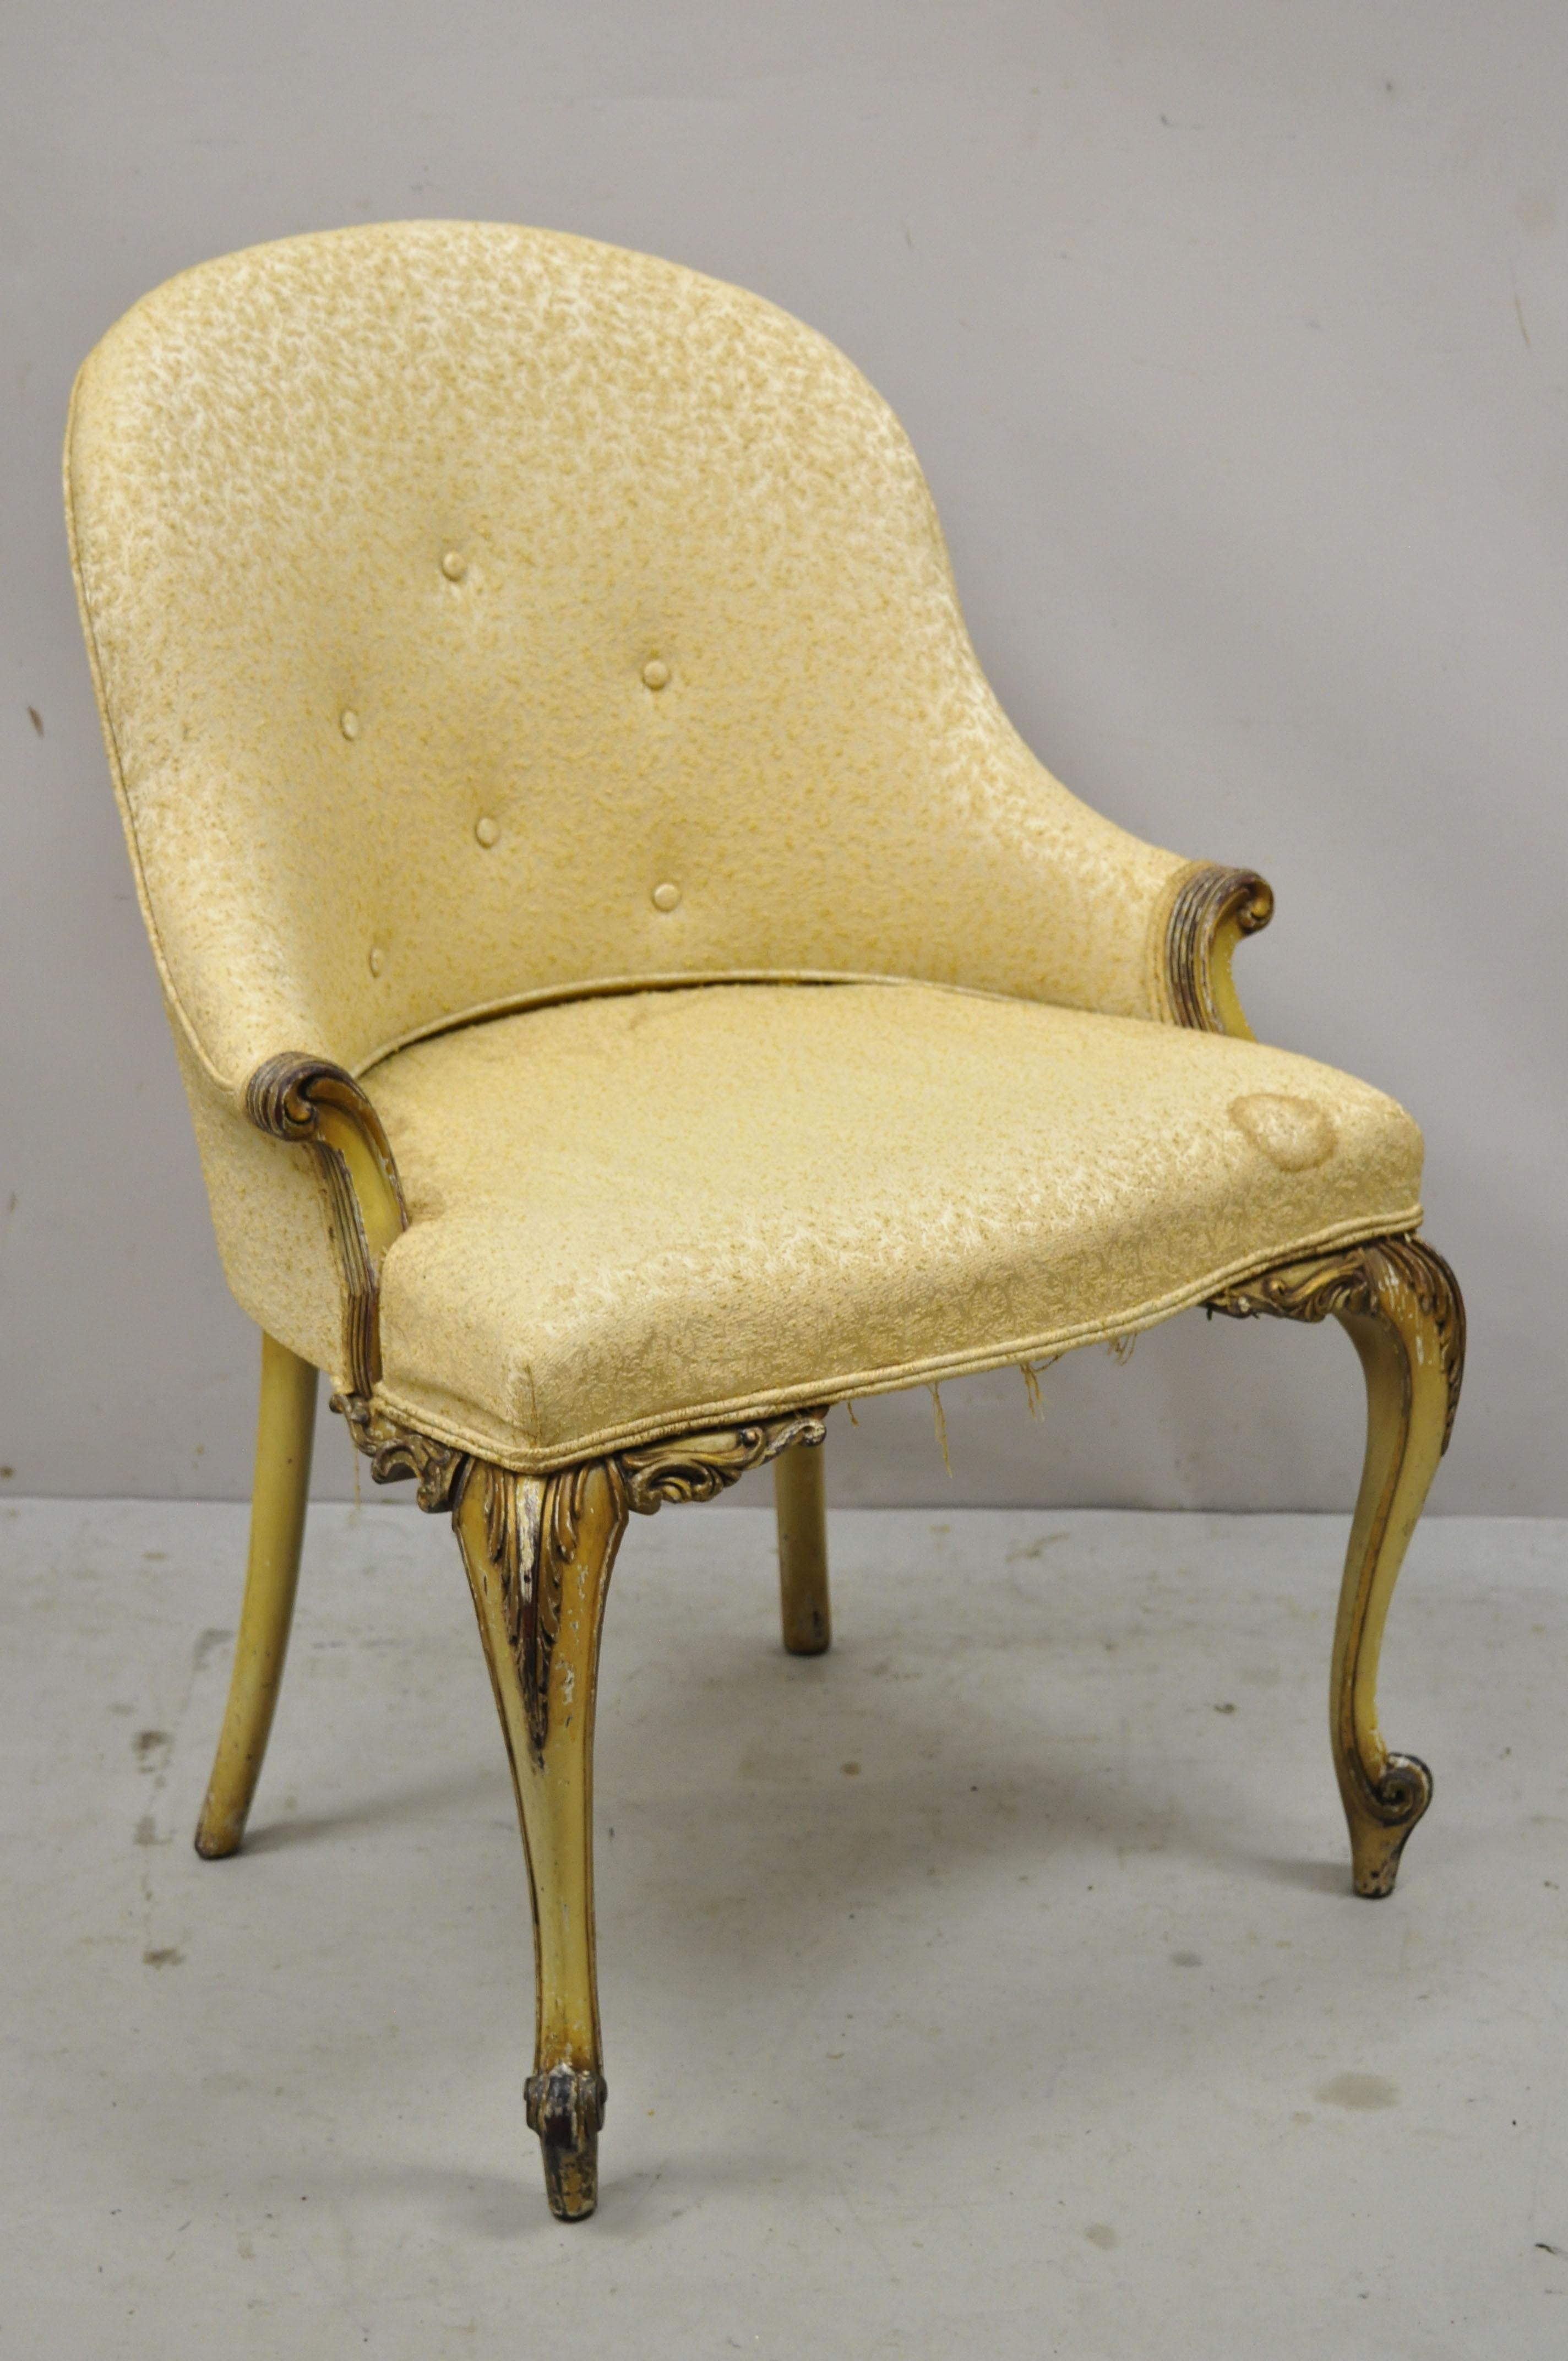 Antique fauteuil de style Louis XV français tapissé et peint en crème. Cet article présente un cadre en bois massif, une finition vieillie, des détails joliment sculptés, une étiquette d'origine, des pieds cabriole, un très bel article ancien, un